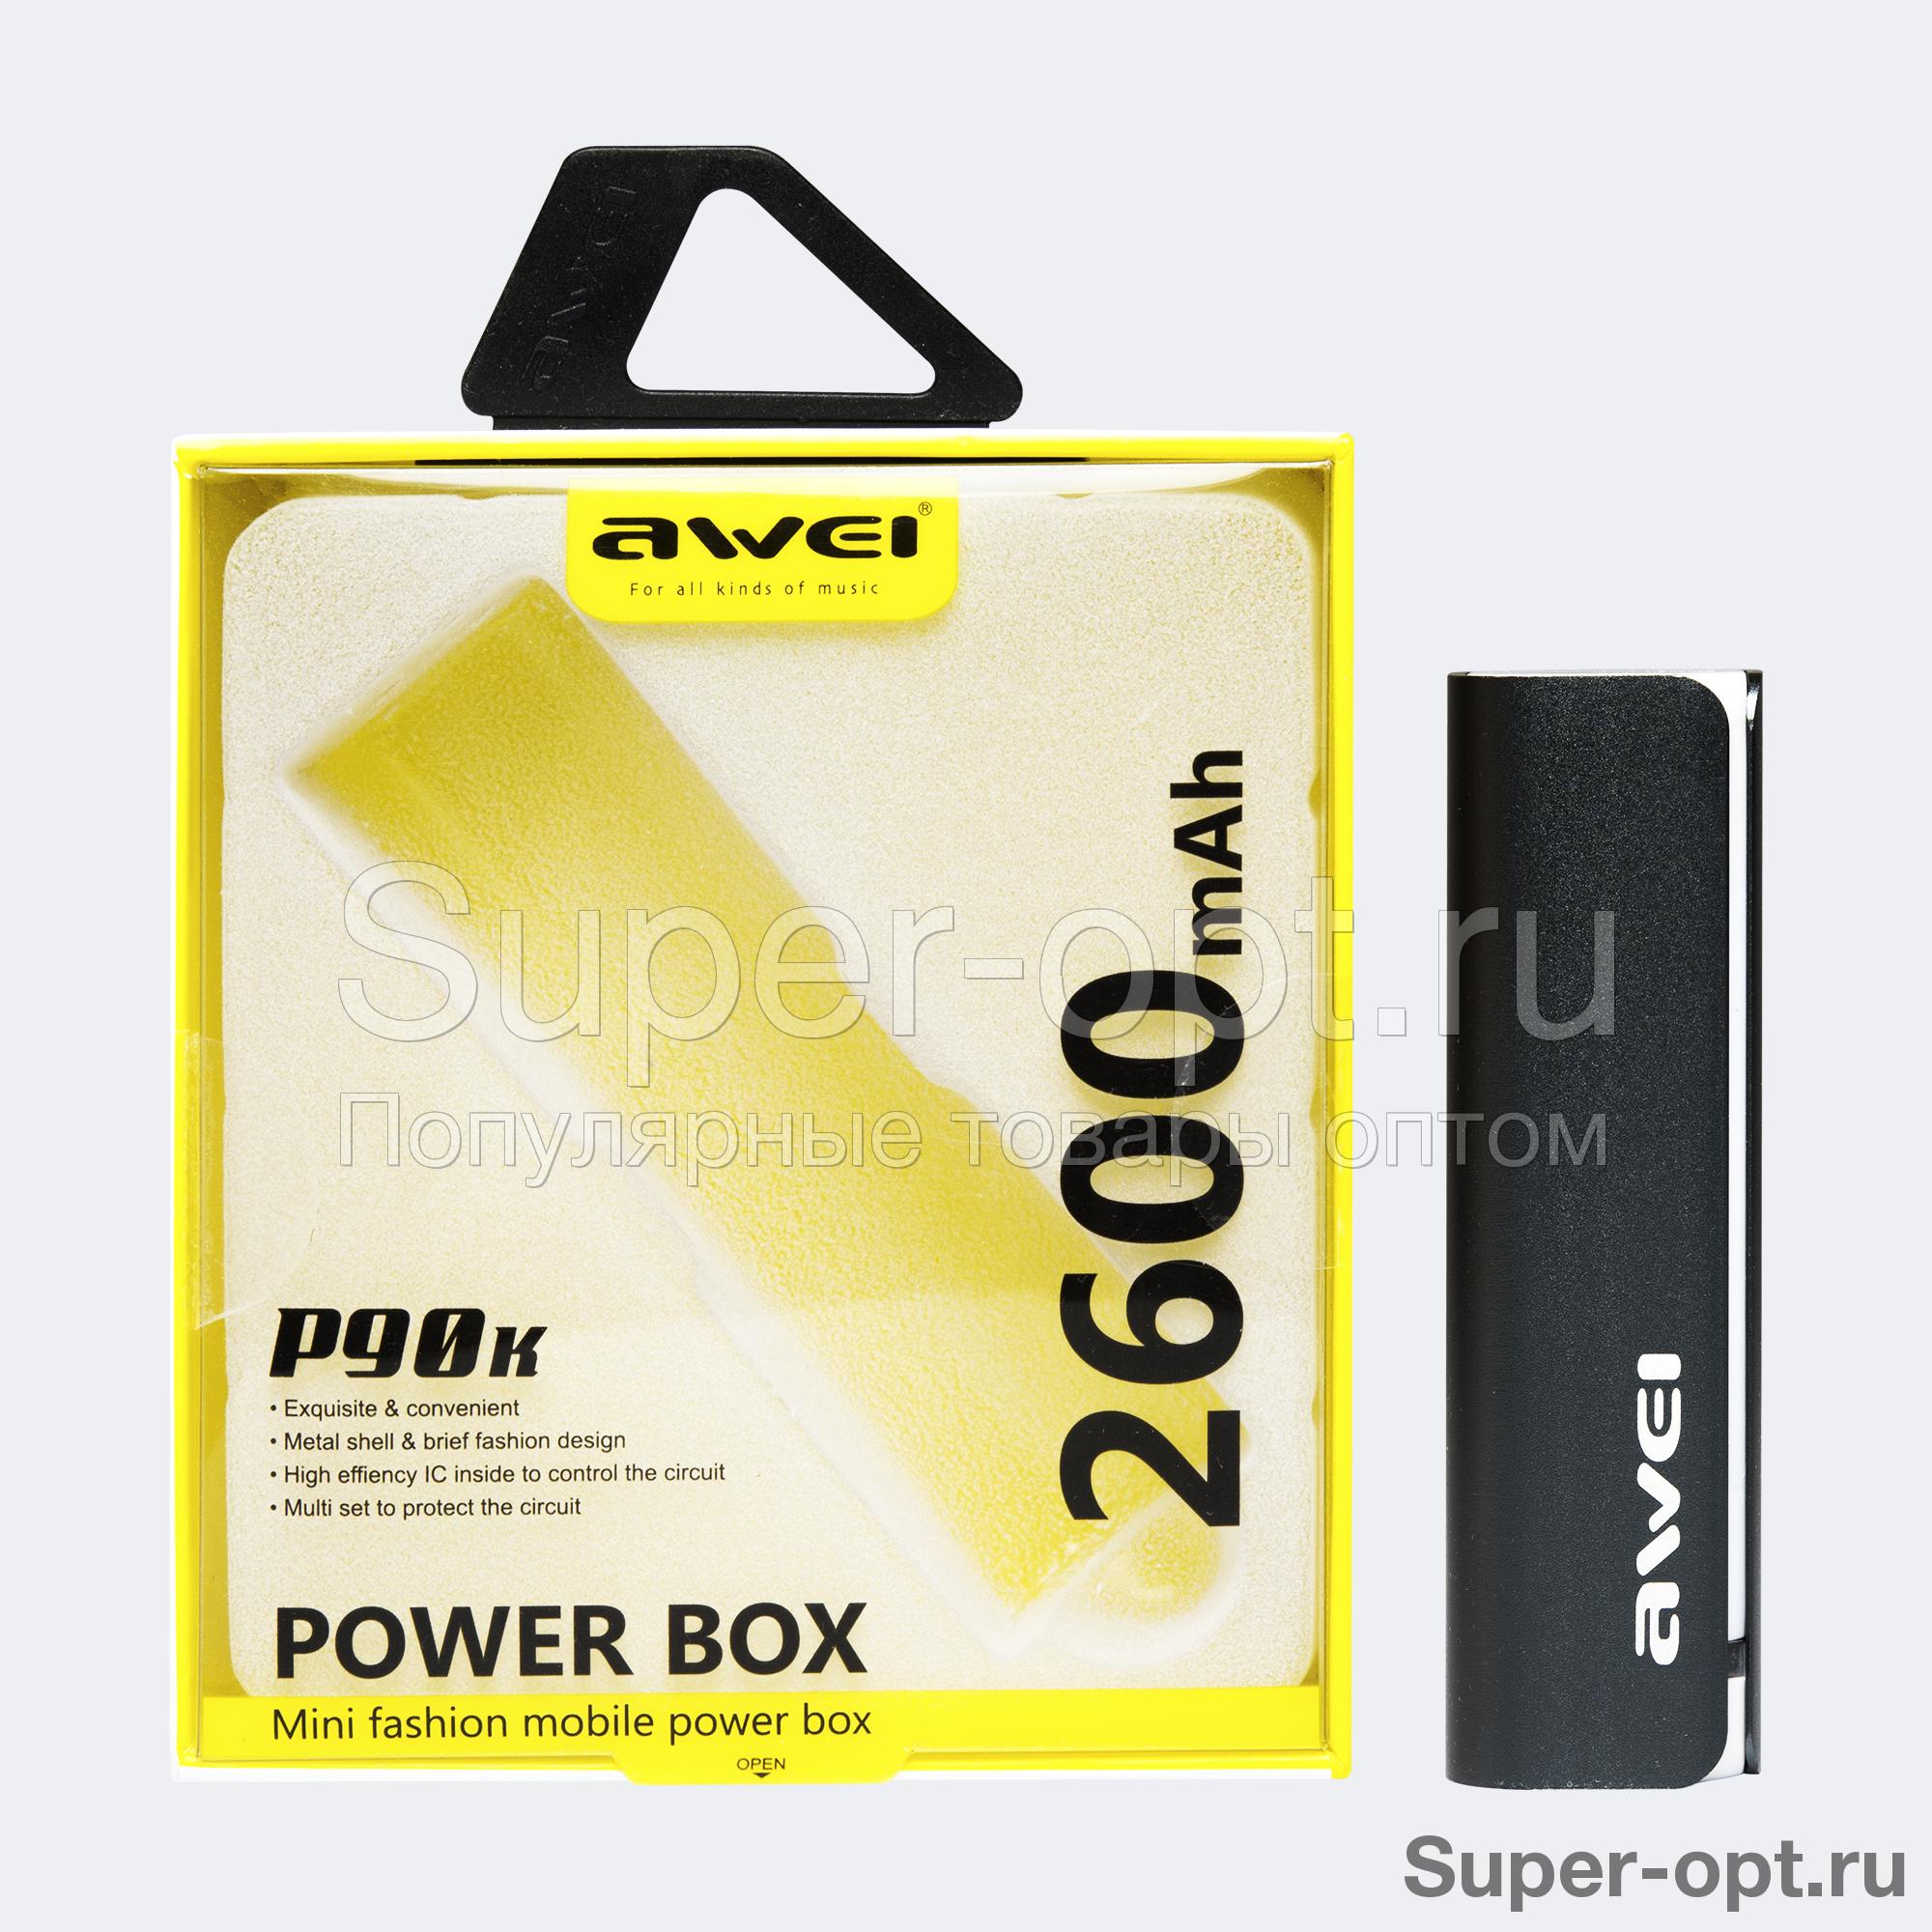 Power Bank Awei P90K 2600 mAh